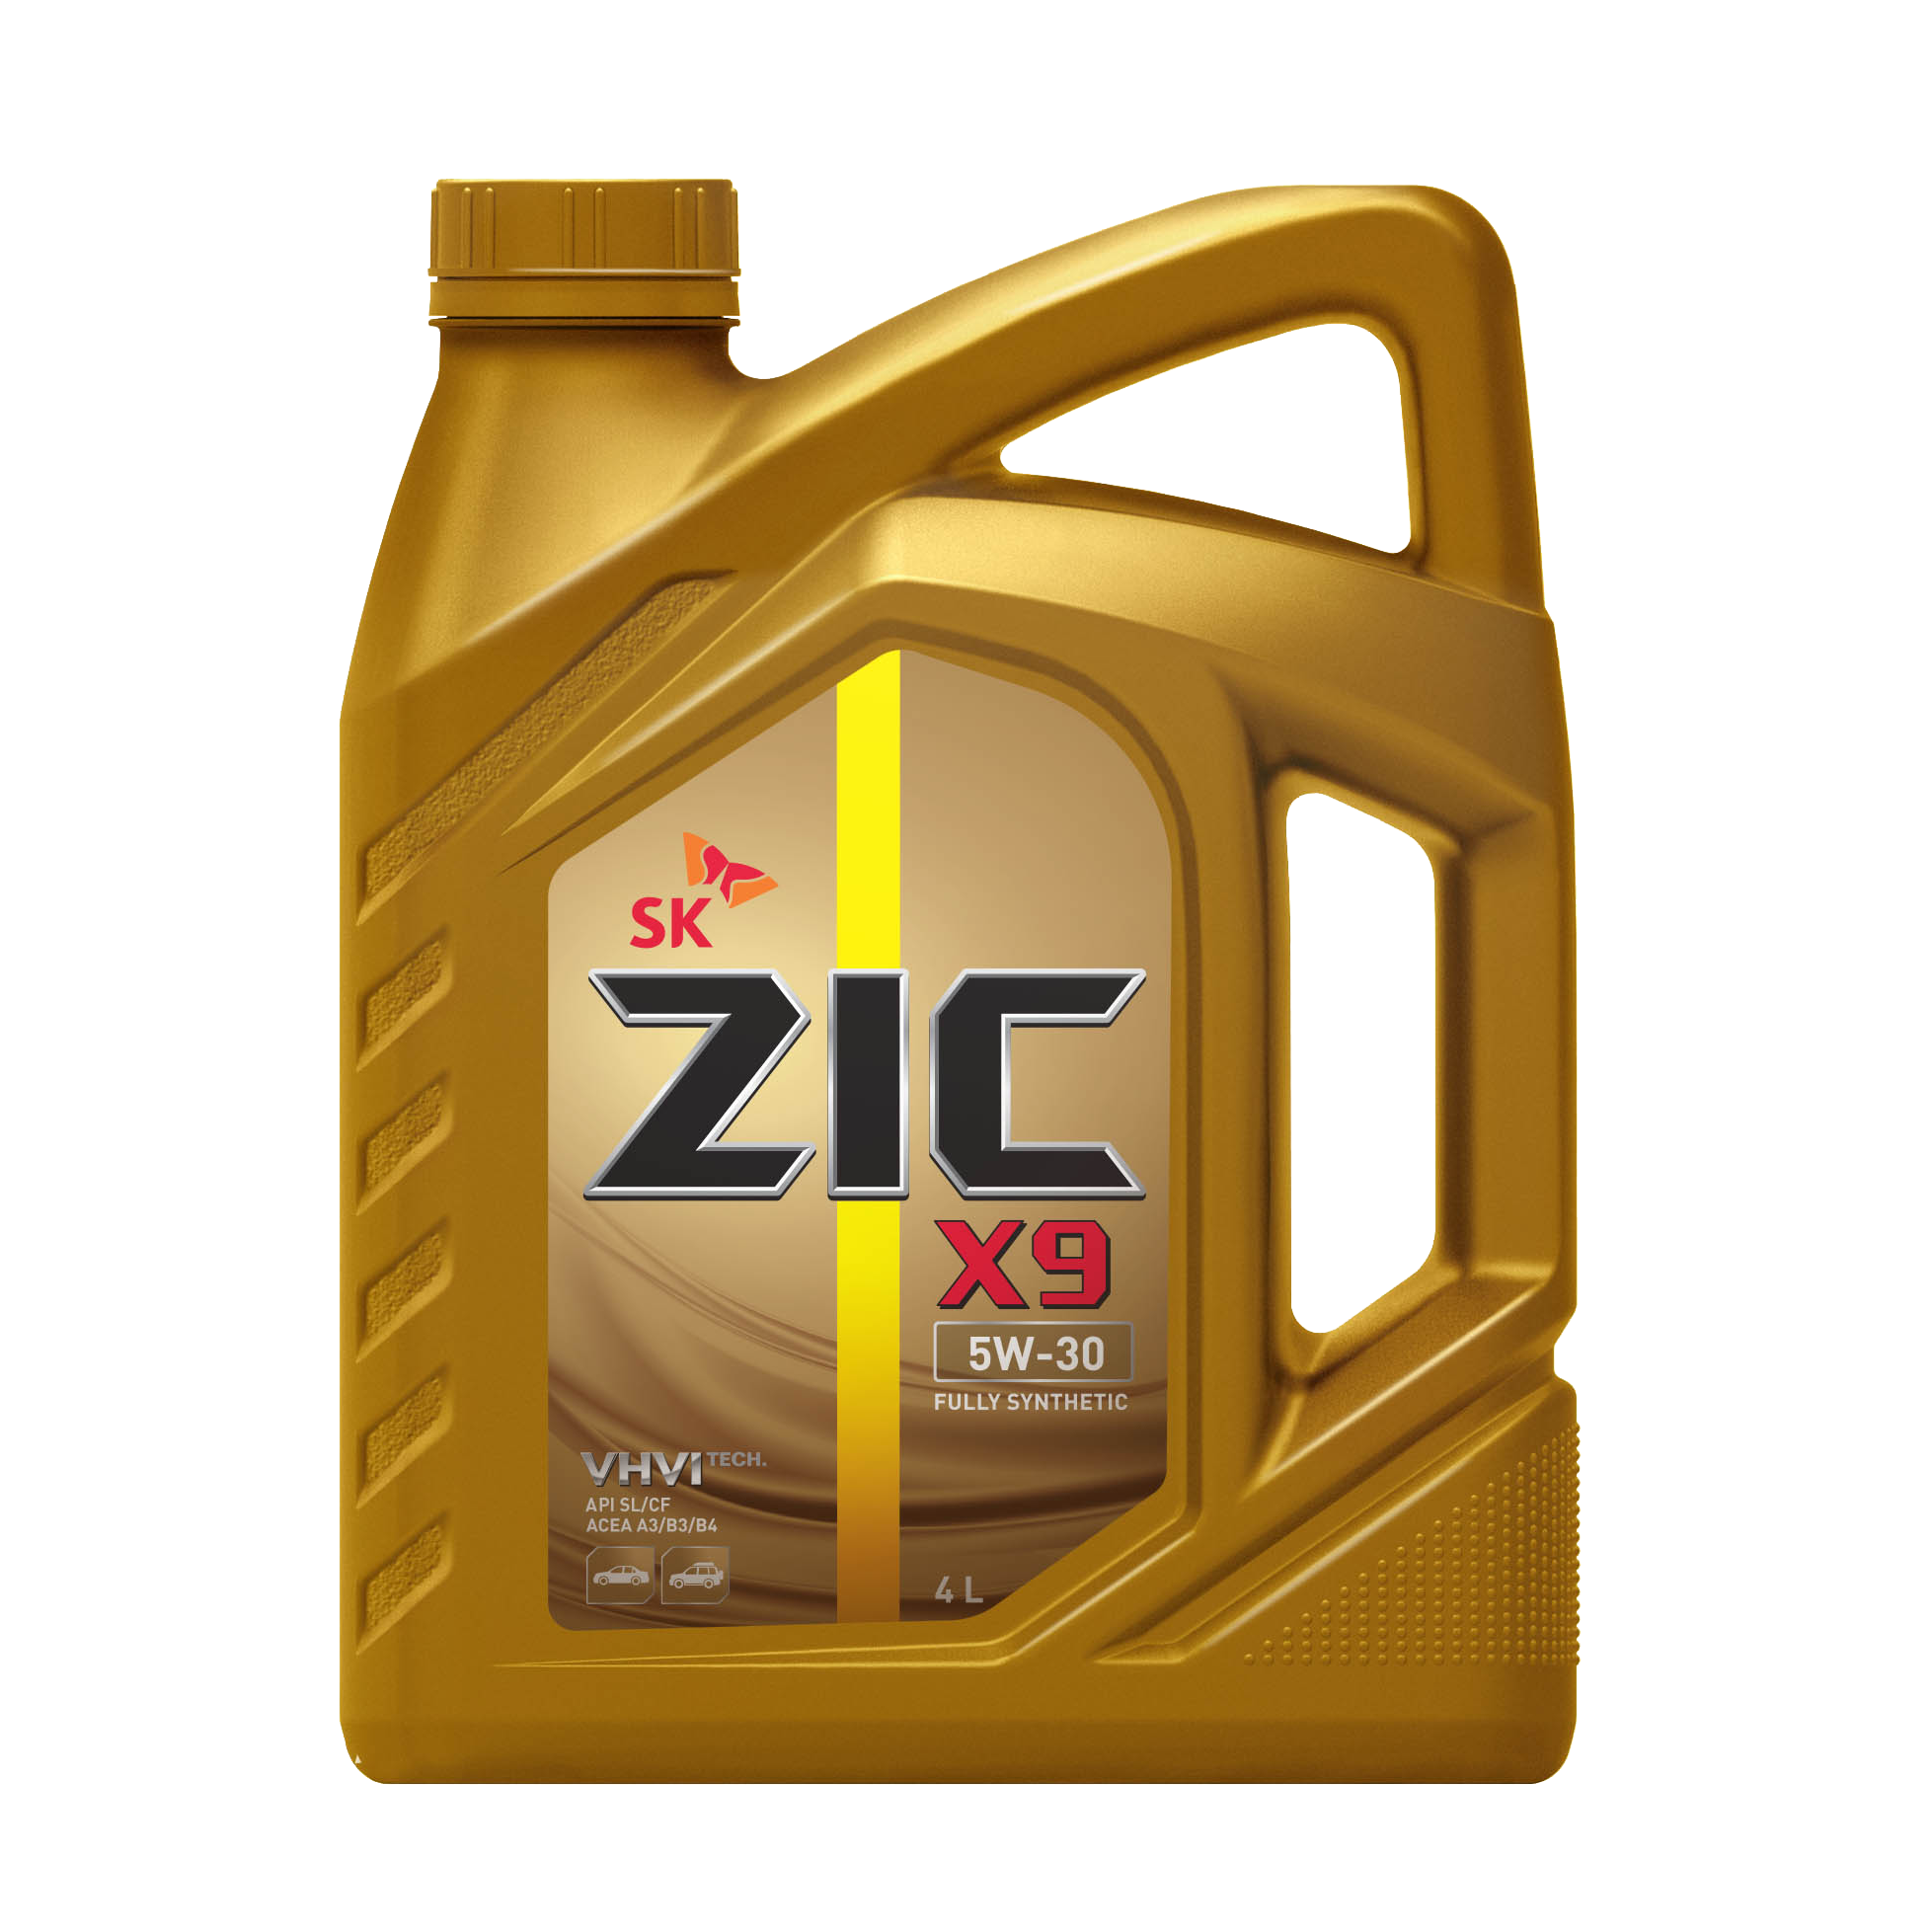 Моторное масло zic top ls